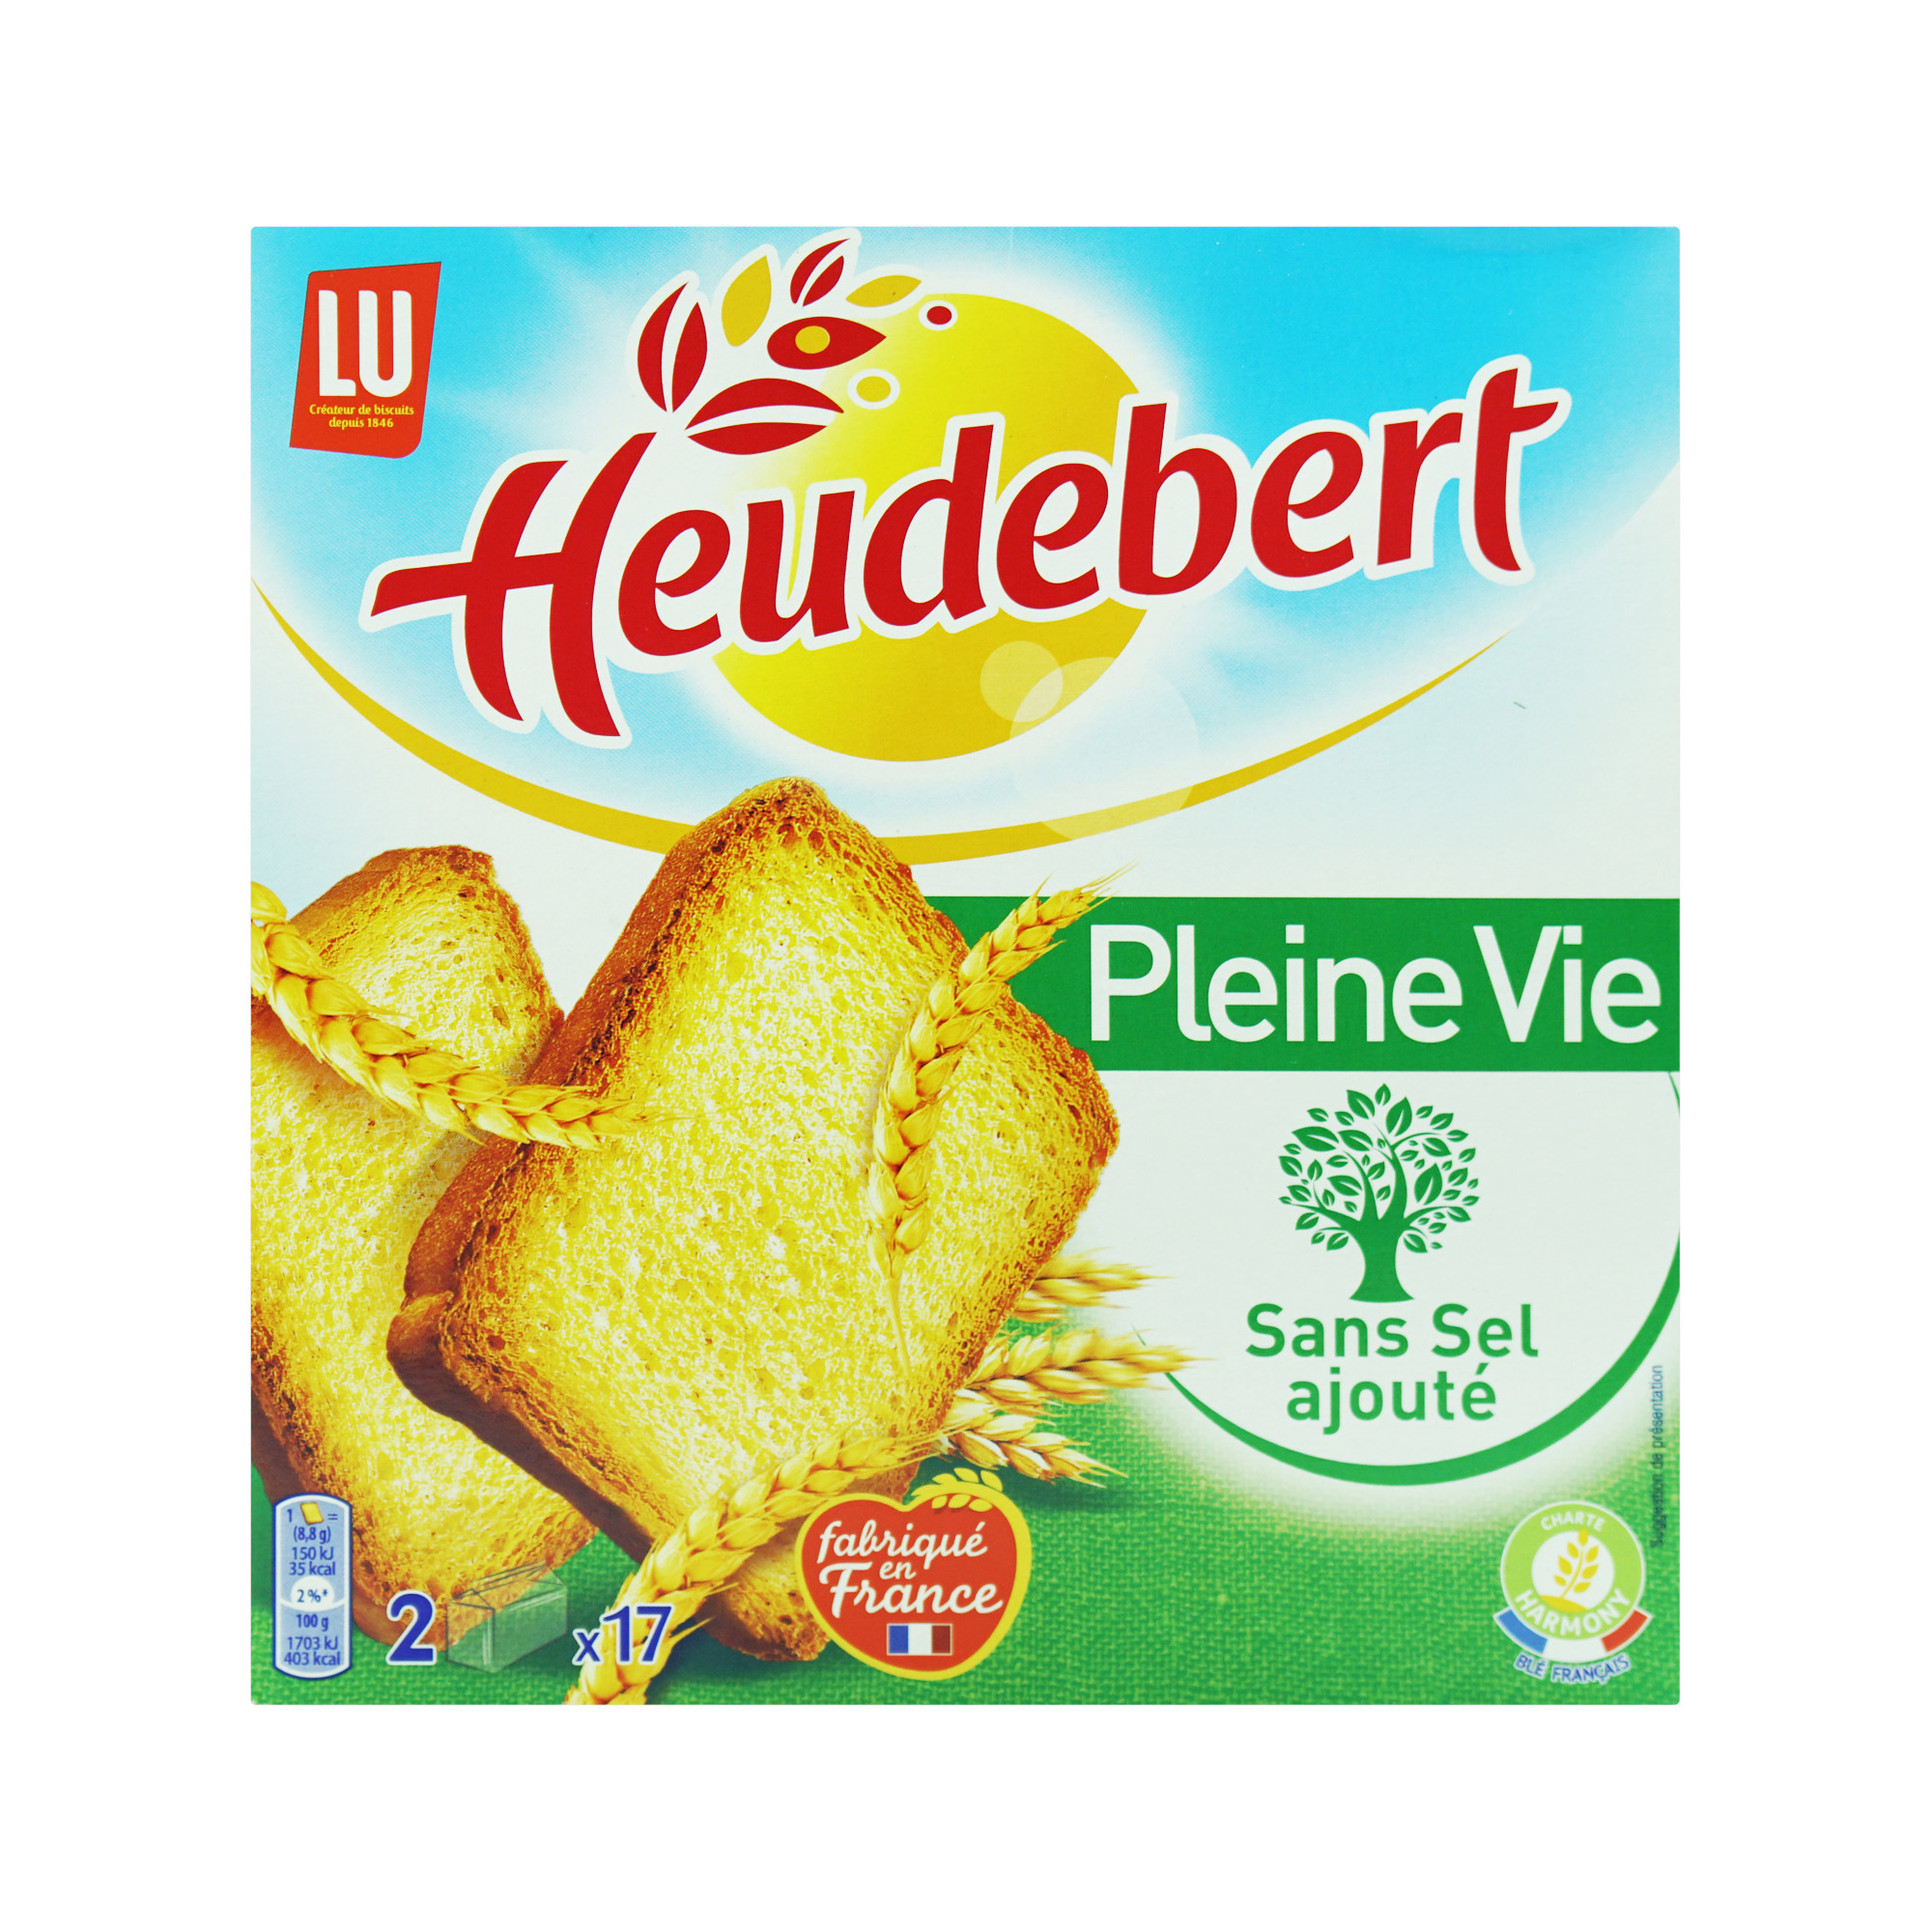 LU Heudebert Toast Pleine Vie Salt Free (300g)